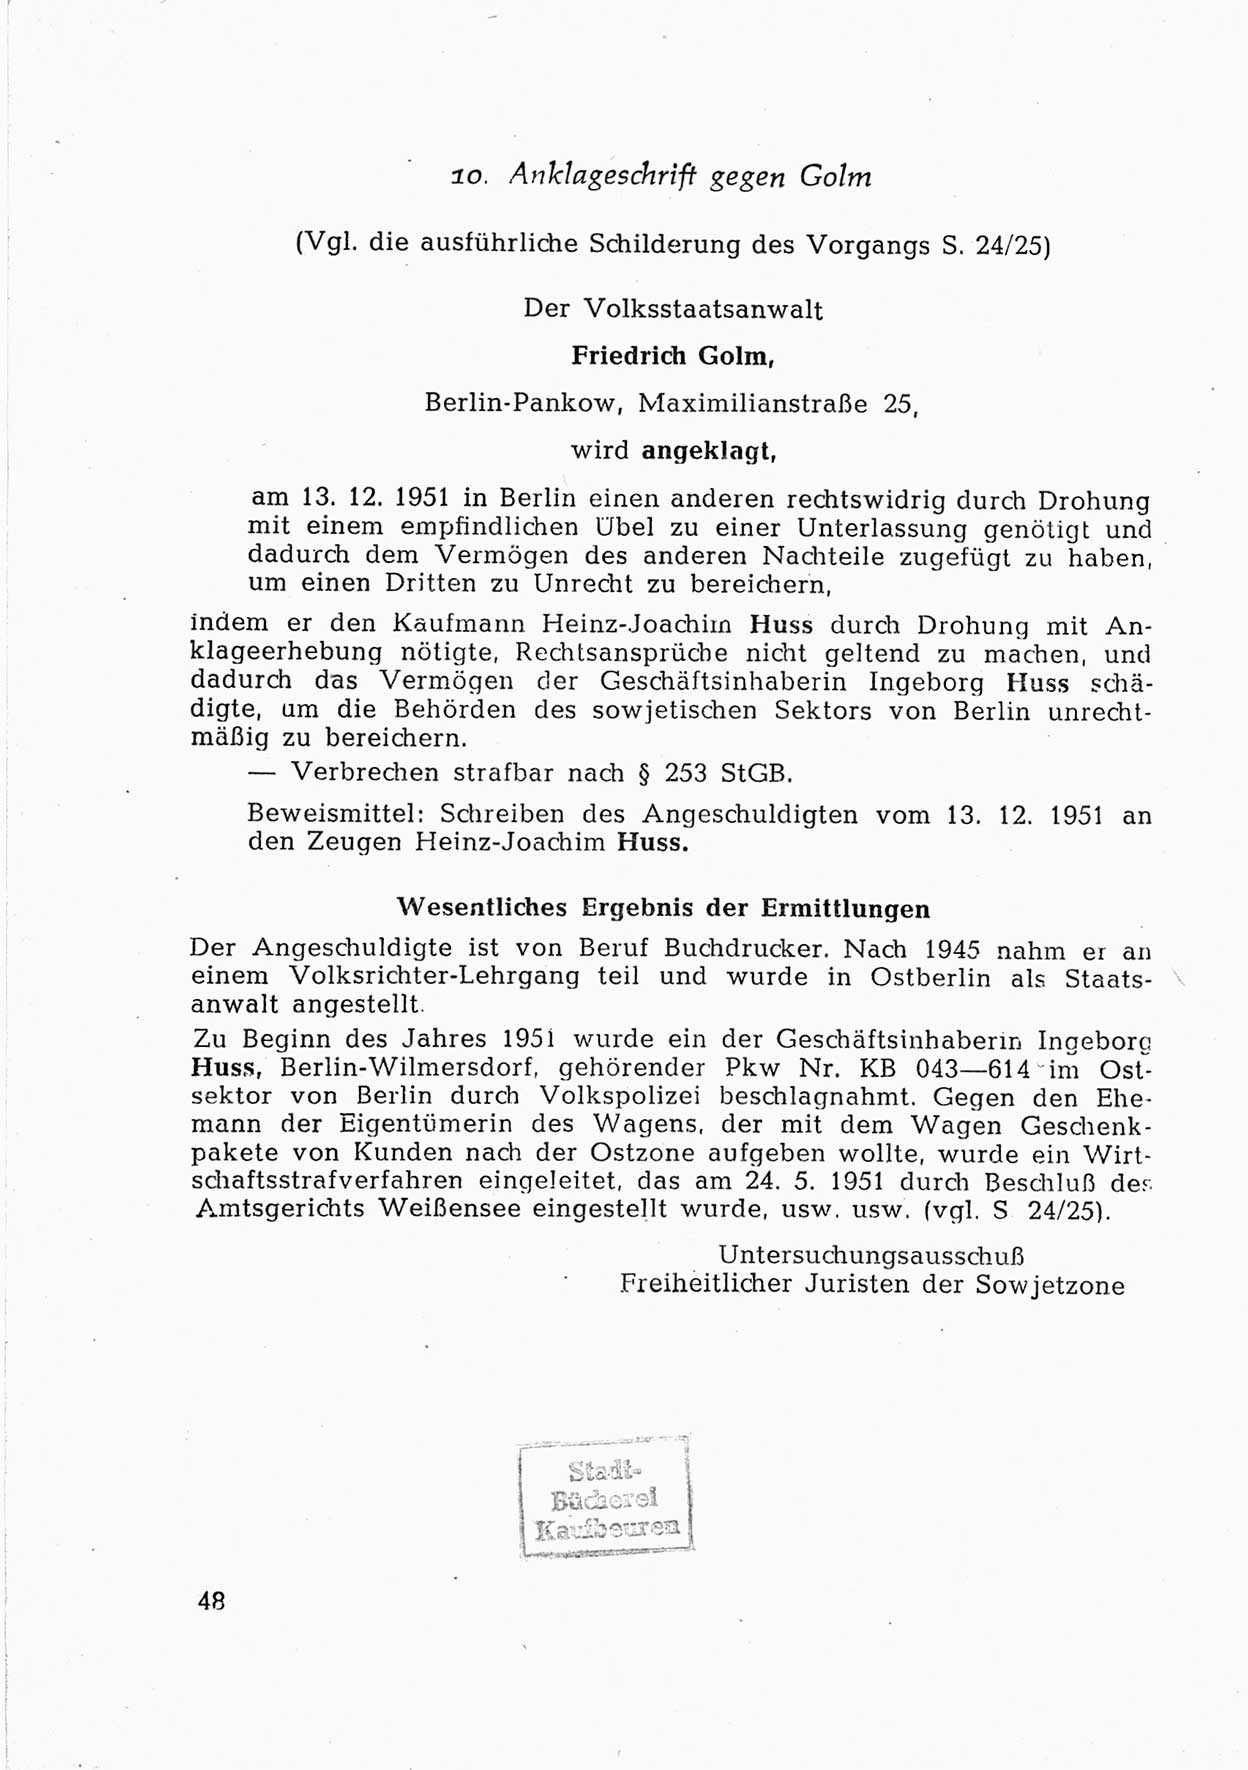 Dokumente des Unrechts [Deutsche Demokratische Republik (DDR)], herausgegeben vom Bundesministerium für gesamtdeutsche Fragen (BMG) [Bundesrepublik Deutschland (BRD)], Bonn, ca. 1952, Seite 48 (Dok. UnR. DDR BMG BRD 1952, S. 48)